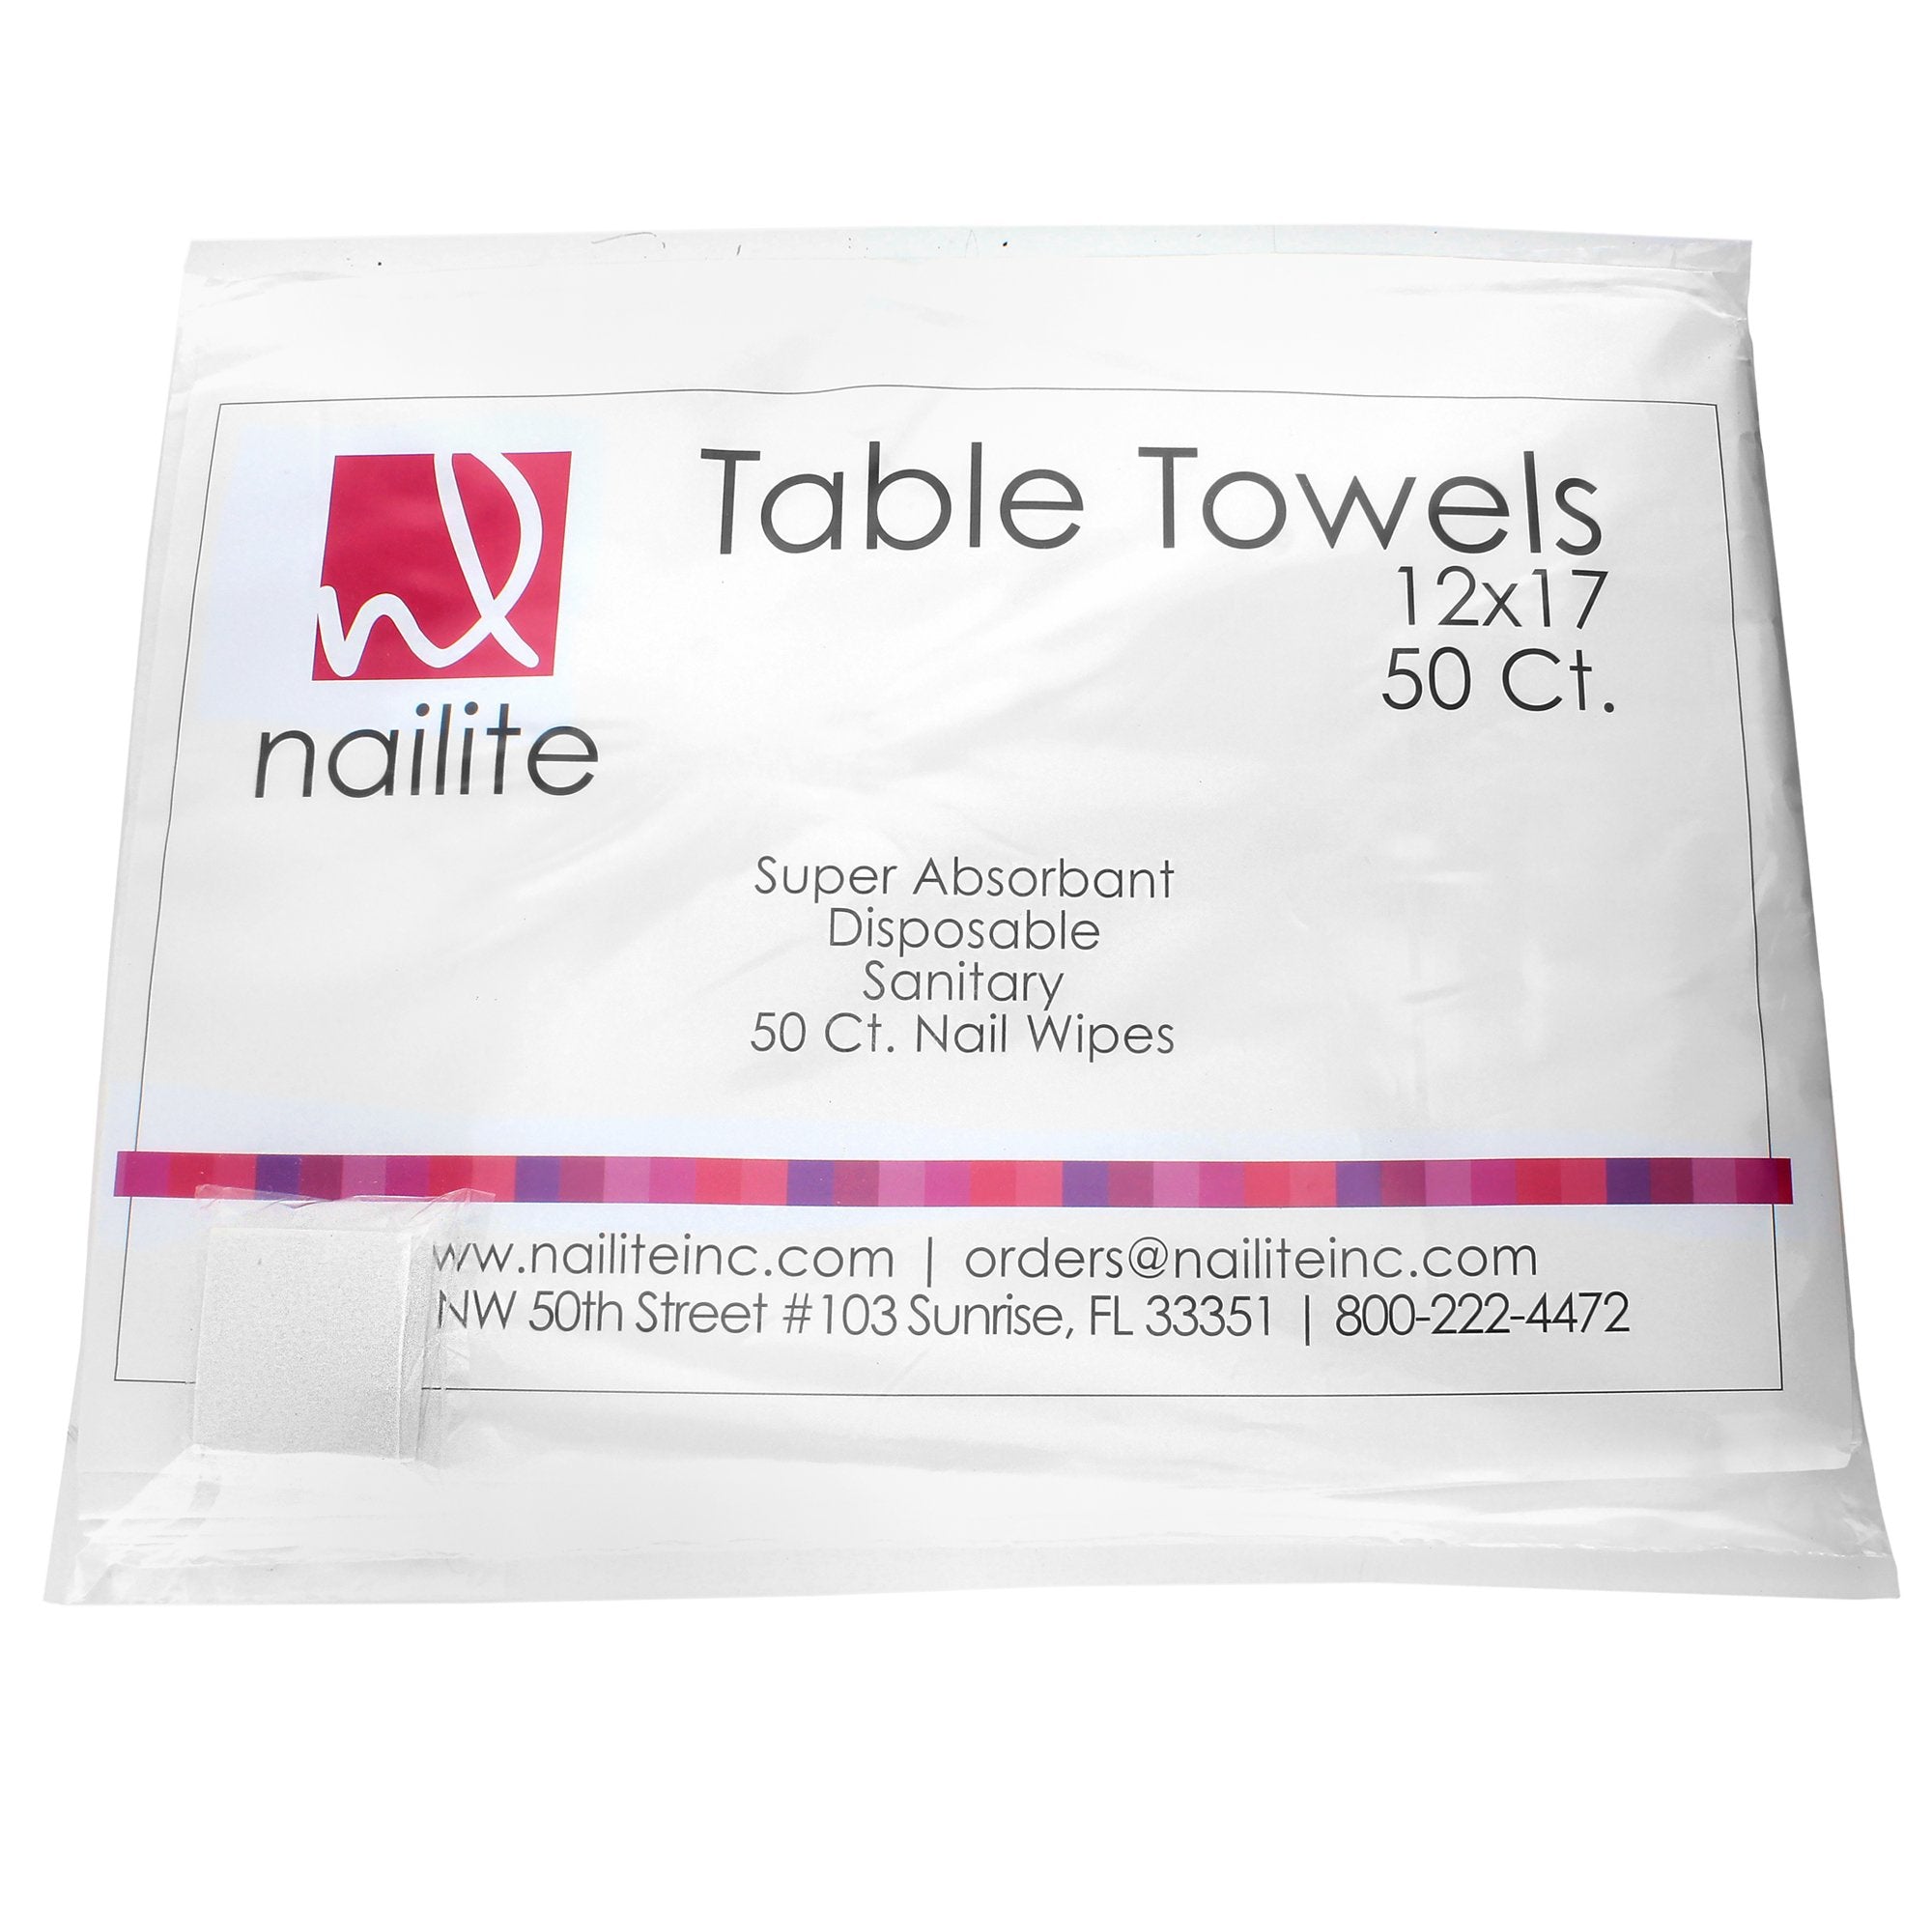 nailite_table_towels_08525e42-9392-4221-9ac1-eb27a9f1d756.jpg